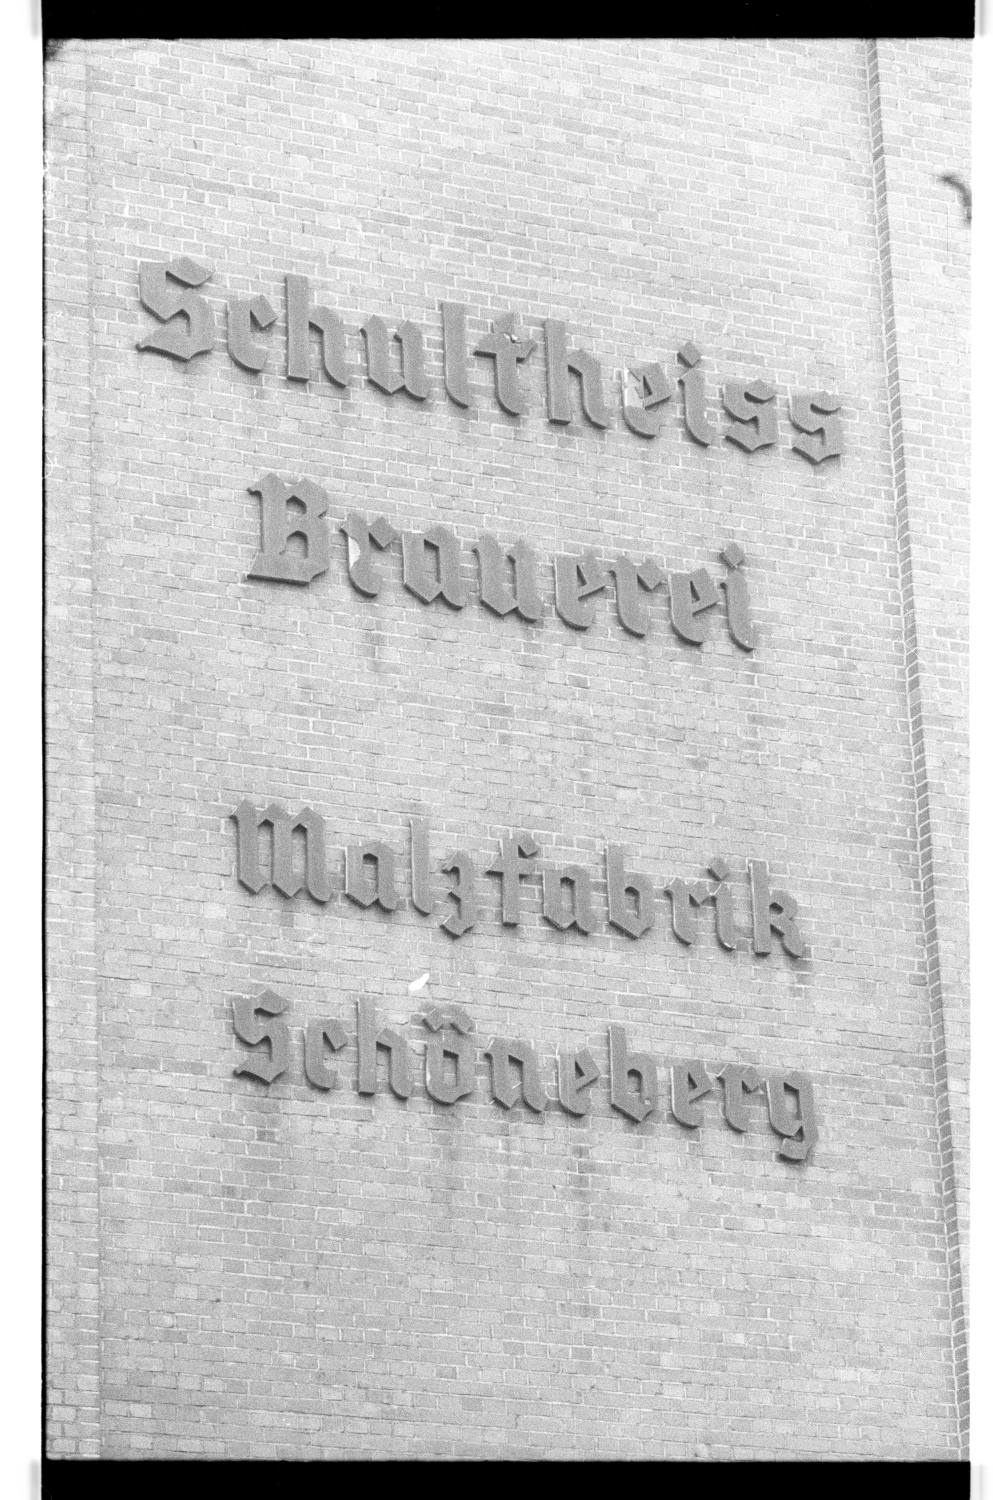 Kleinbildnegative: Schultheiss- Brauerei und Malzfabrik, 1978 (Museen Tempelhof-Schöneberg/Jürgen Henschel RR-F)